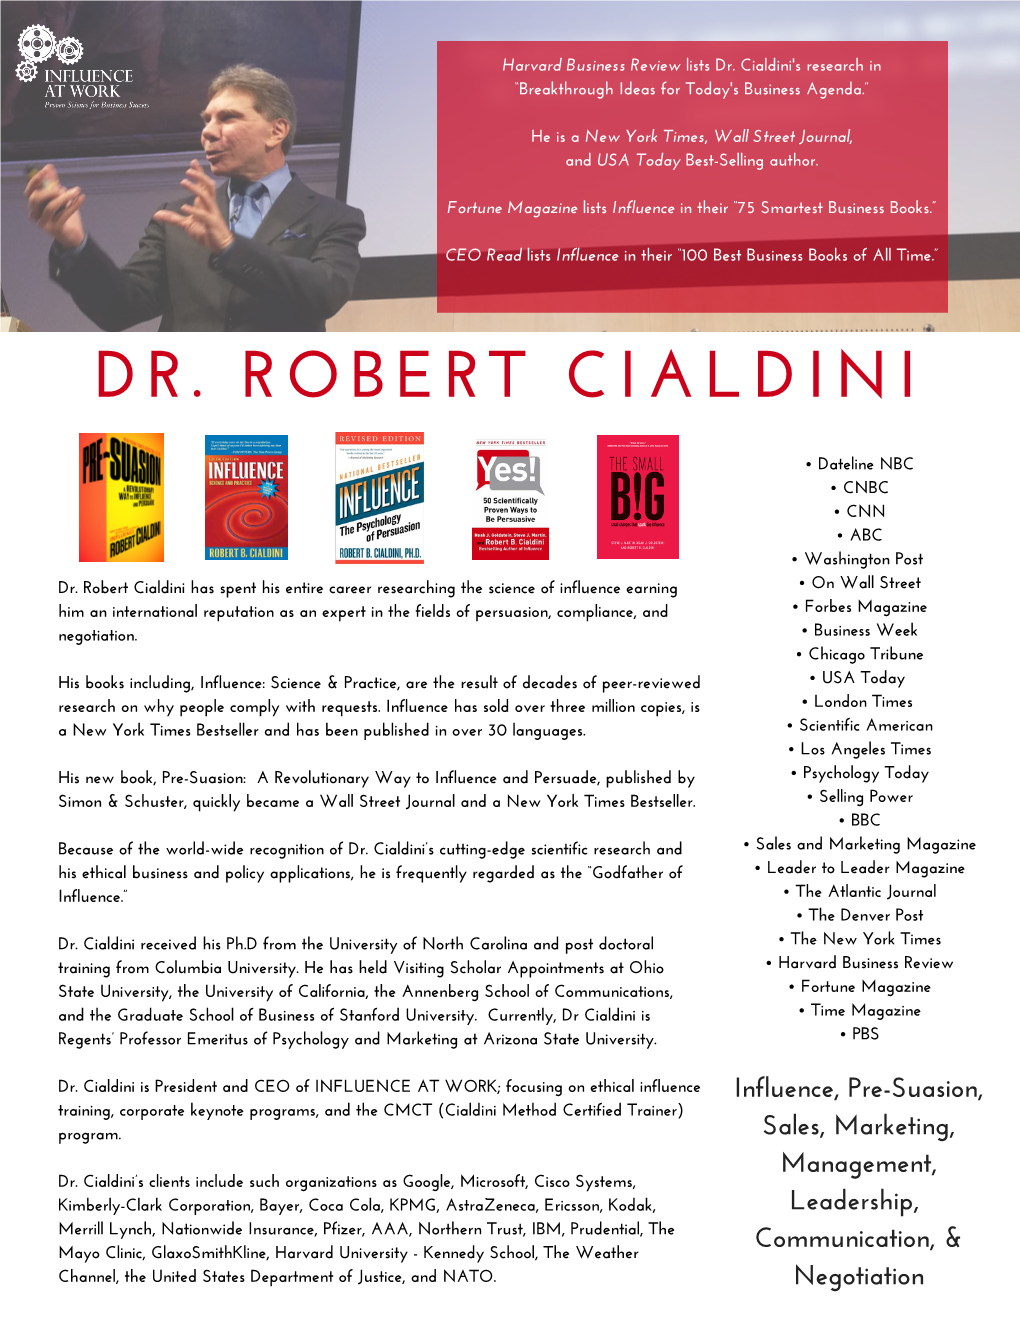 Dr. Robert Cialdini BIO 2017